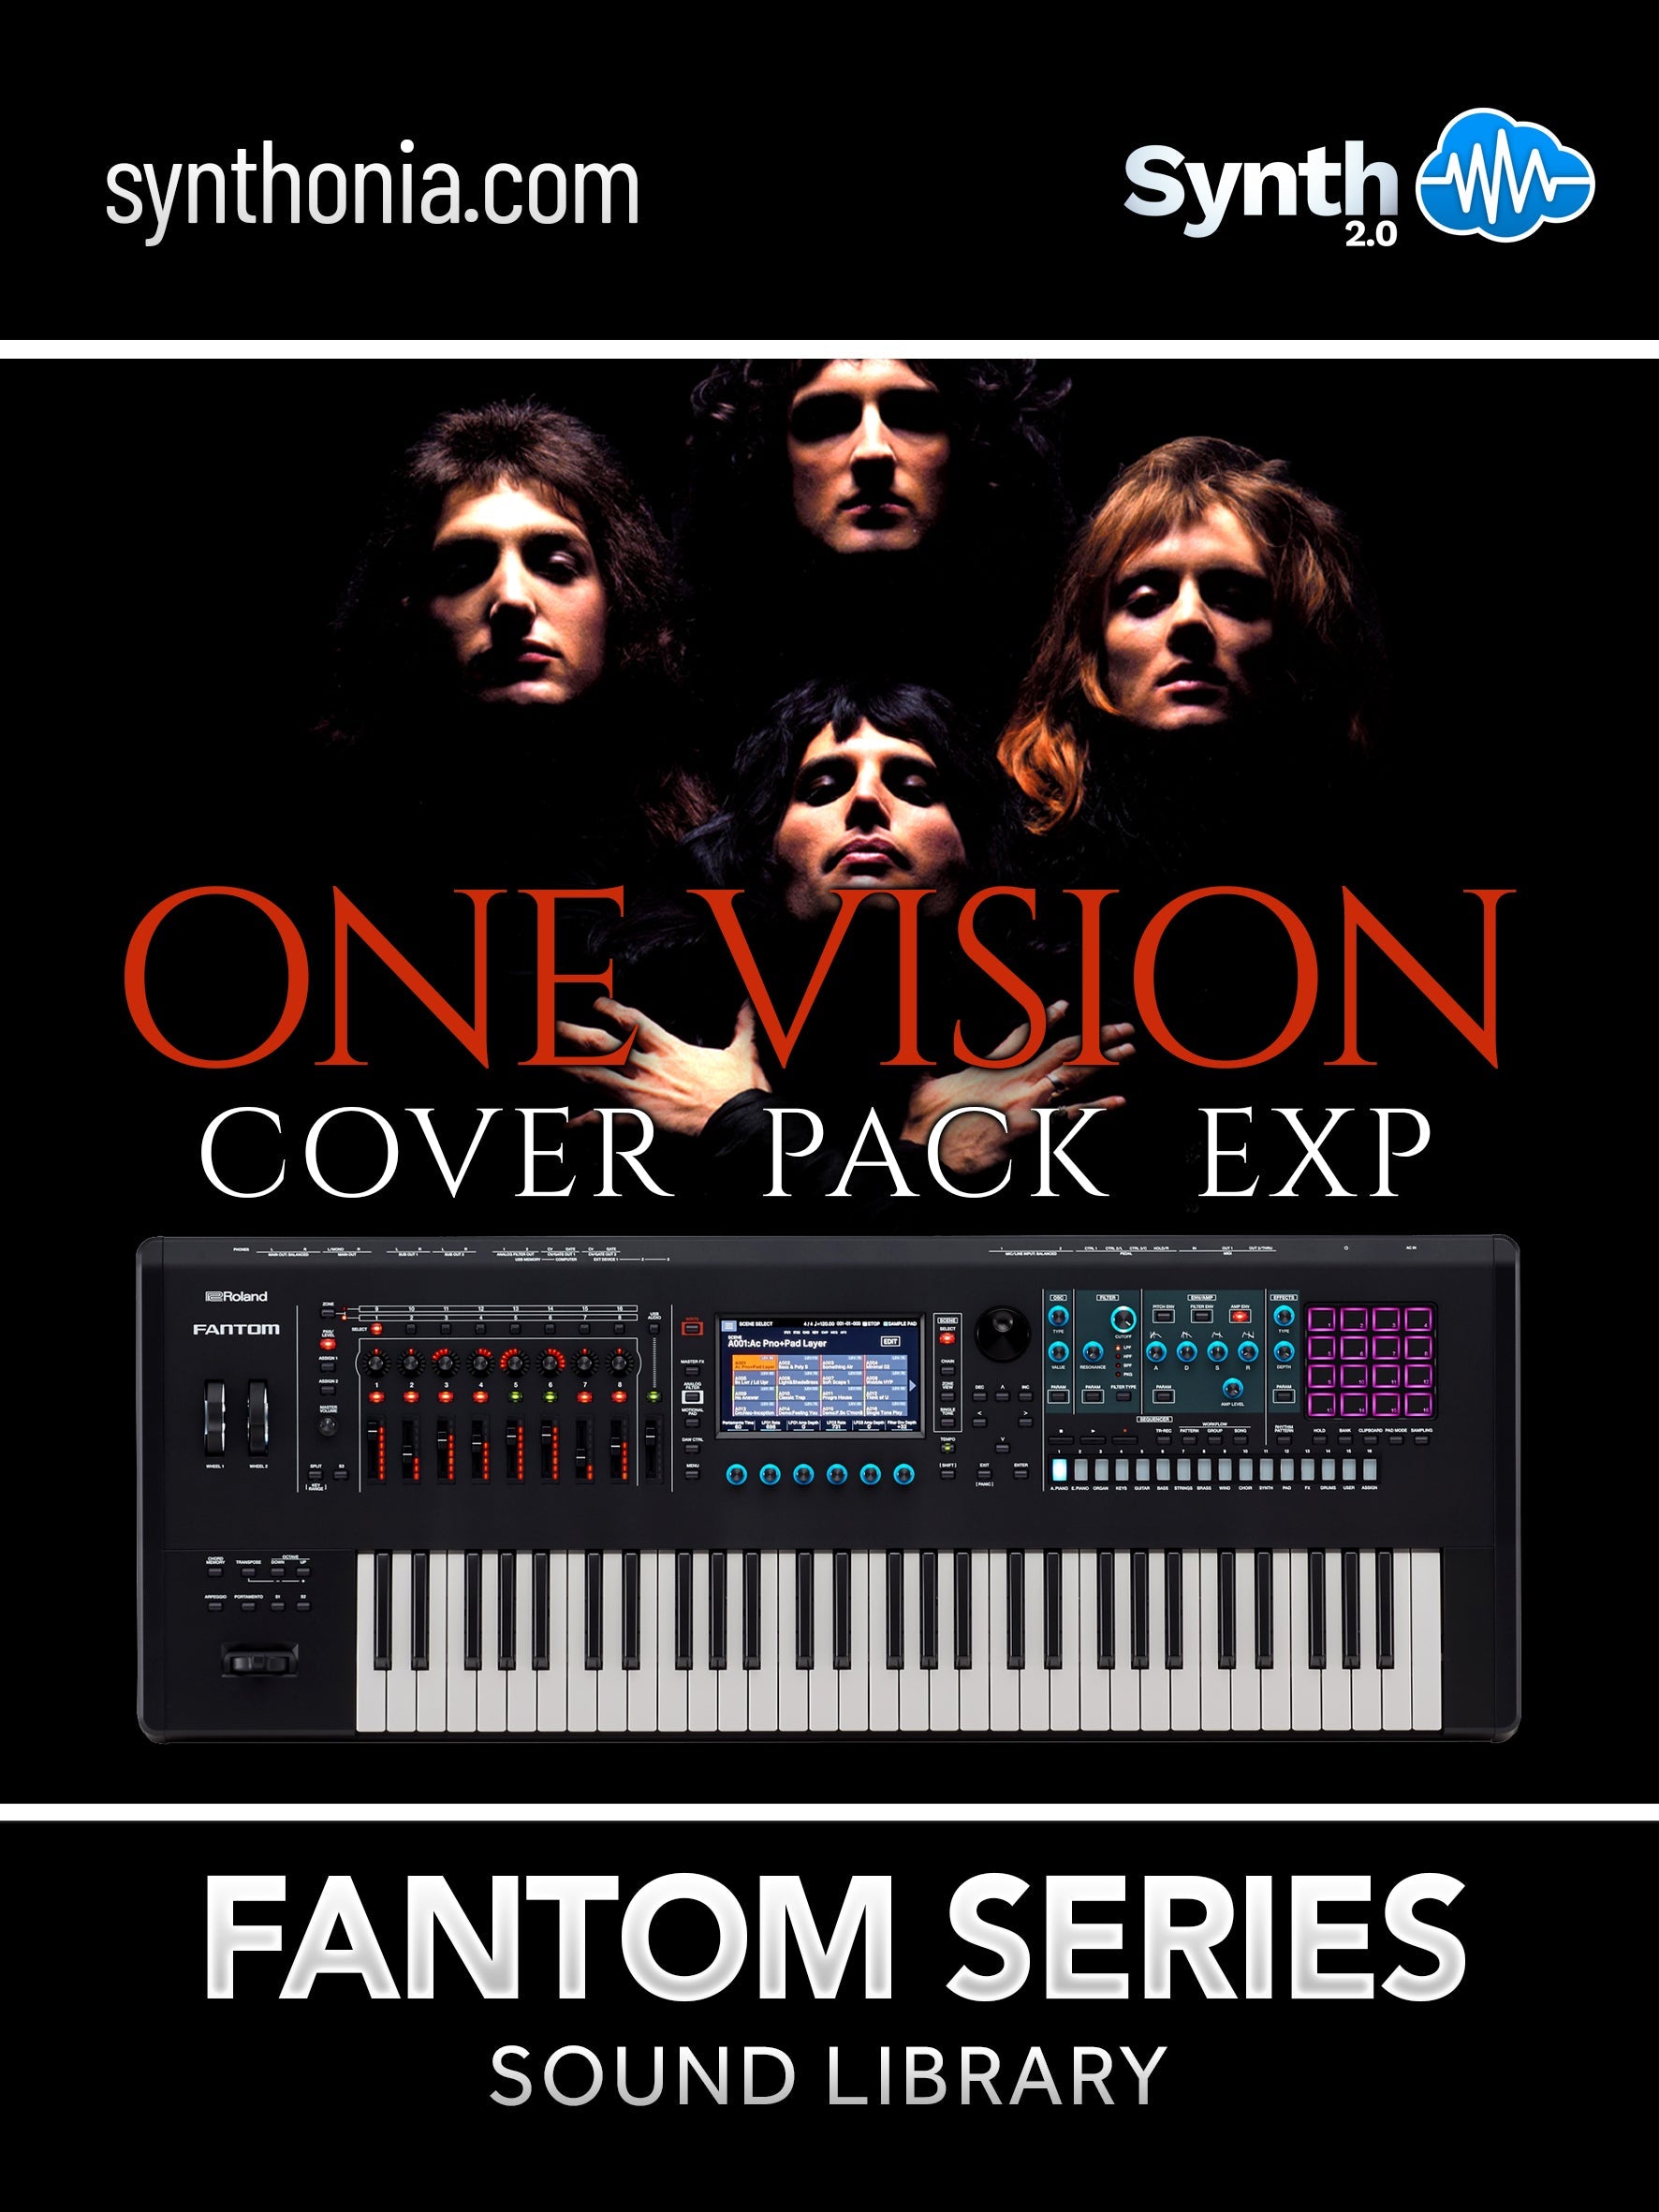 LDX039 - ( Bundle ) - One Vision Cover EXP + T9t9 Anthology - Fantom